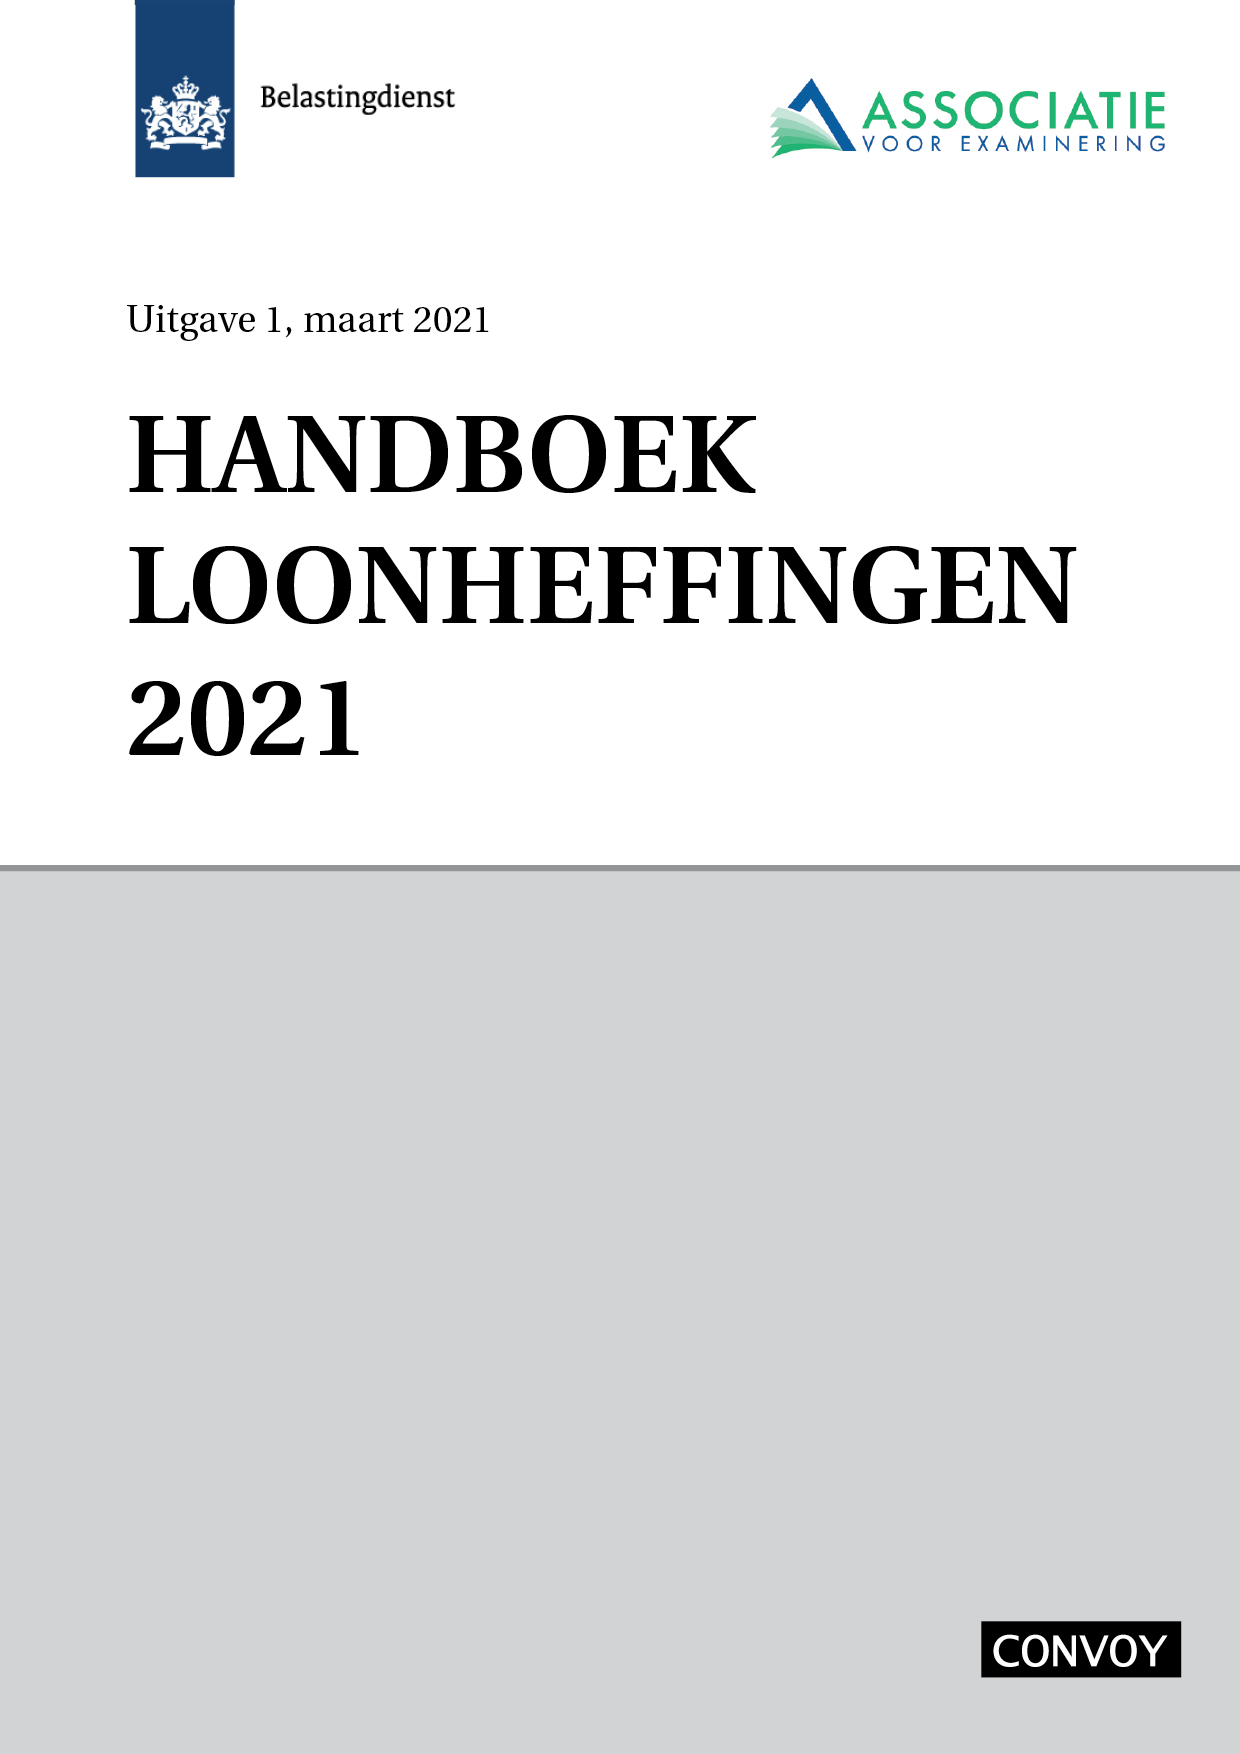 Handboek Loonheffingen 2021